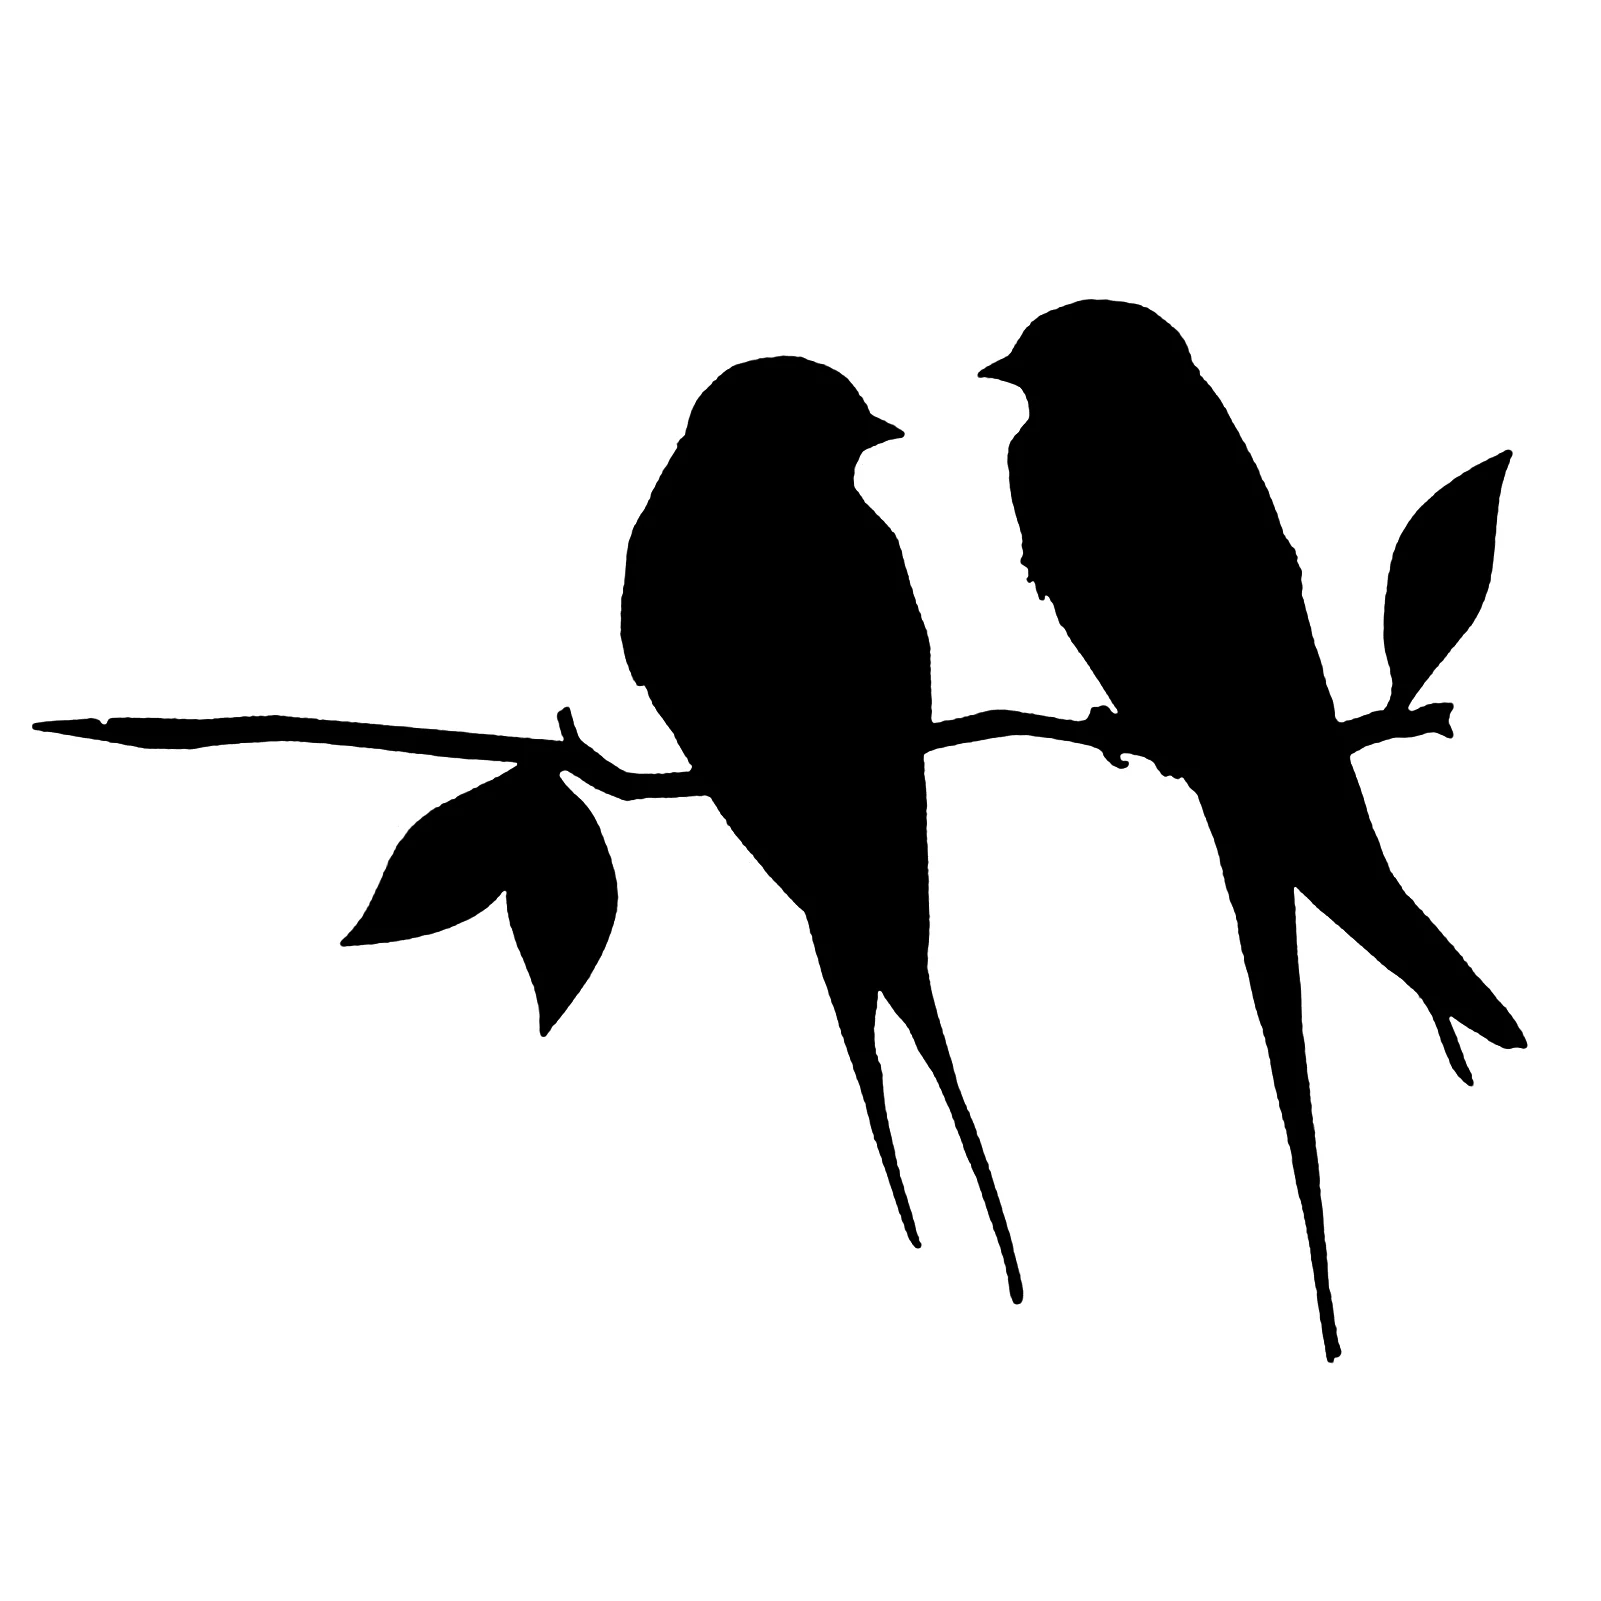 

Металлическое украшение для Колибри, черная кованая железная птица на ветке, садовый силуэт для животных, силуэт Колибри для сада